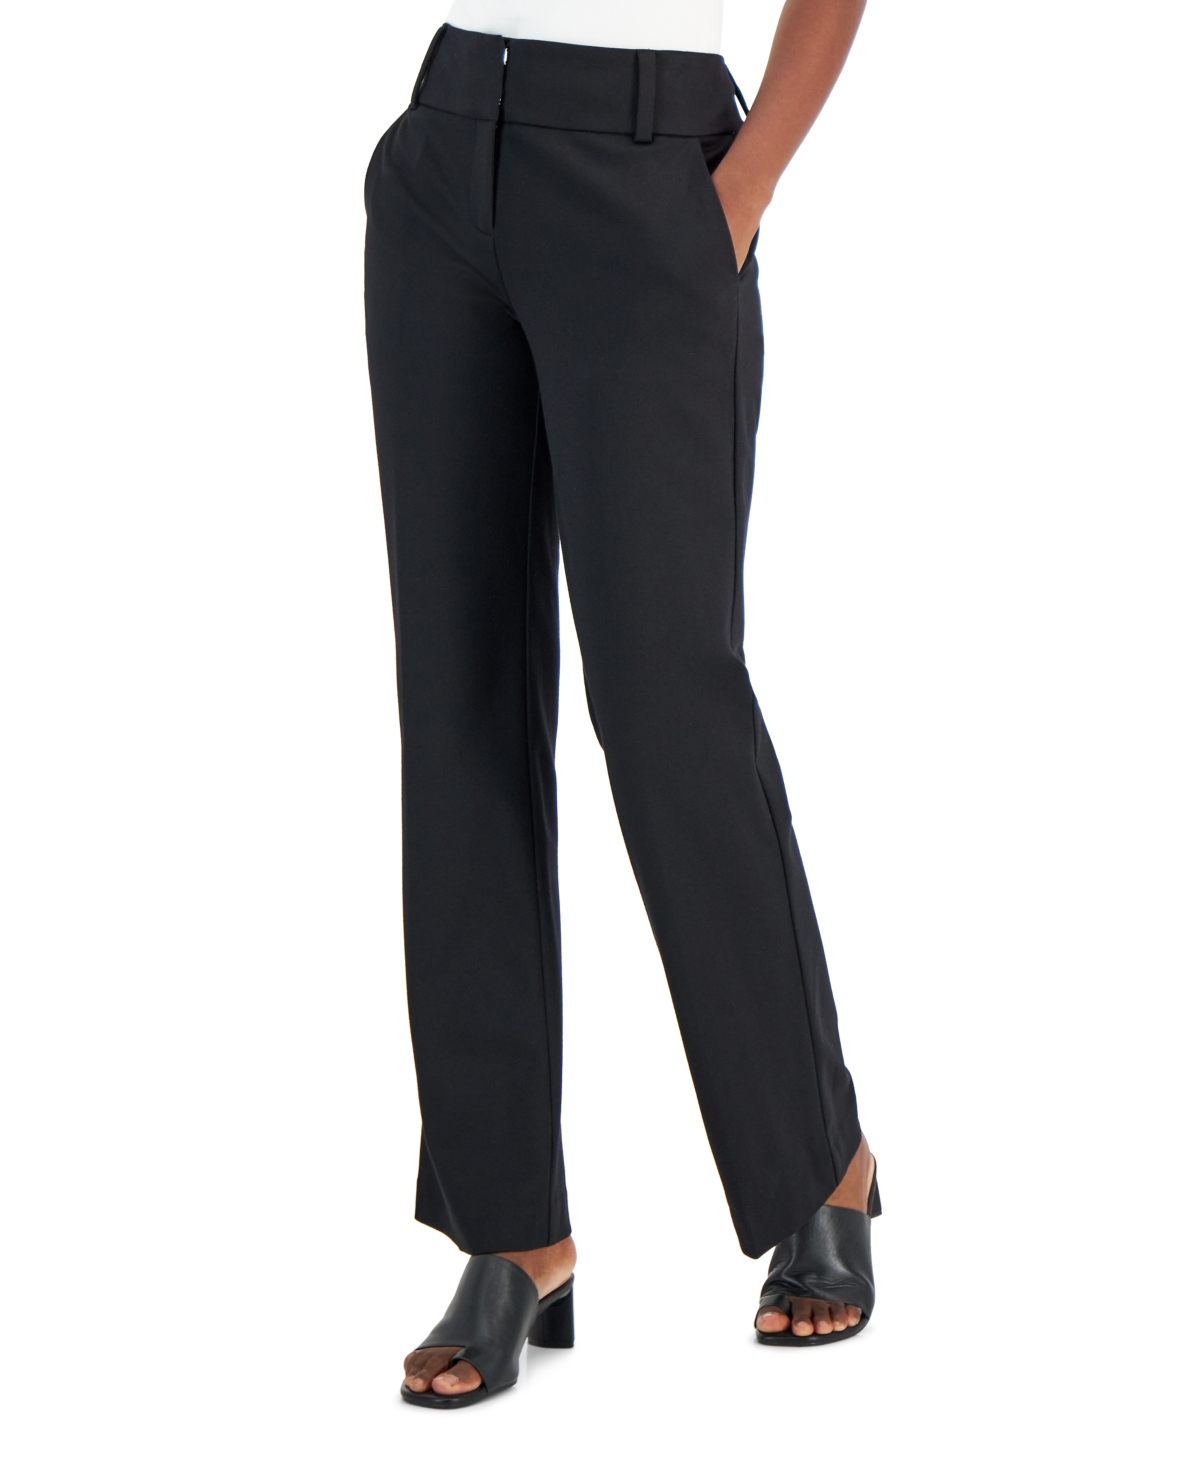 Women's Ponté-Knit Pants, Short & Long, Created for Macy's